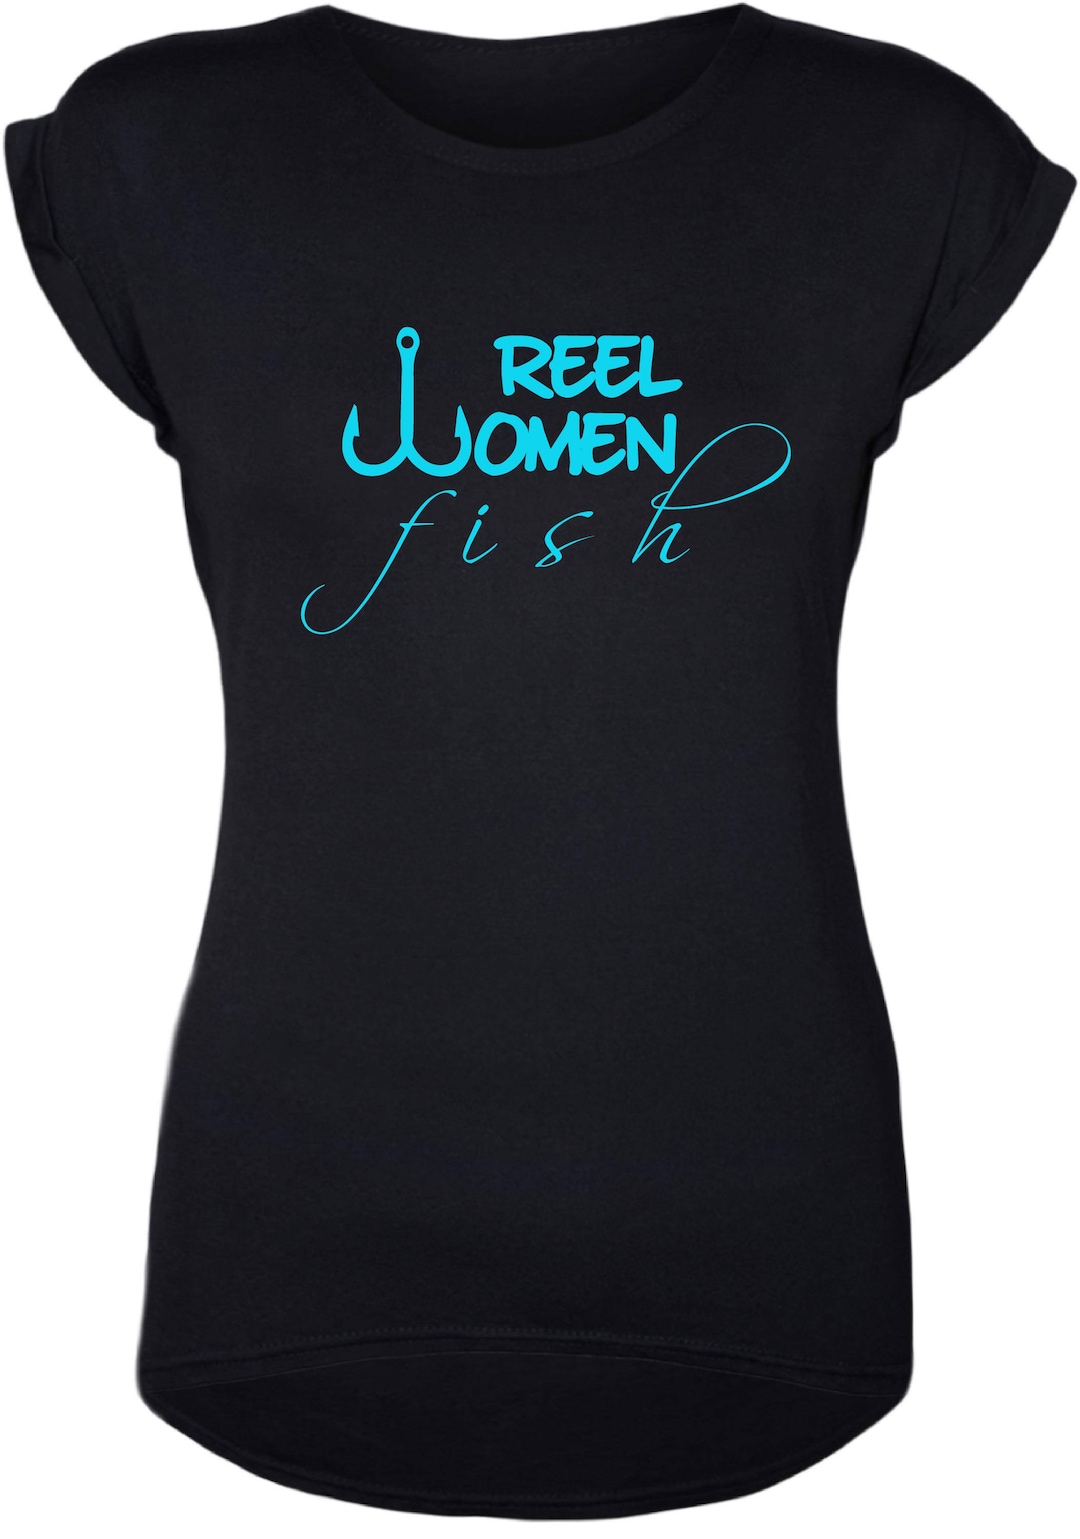 Buy Fishing Shirts, Fishing Shirts for Women, Women's Fishing